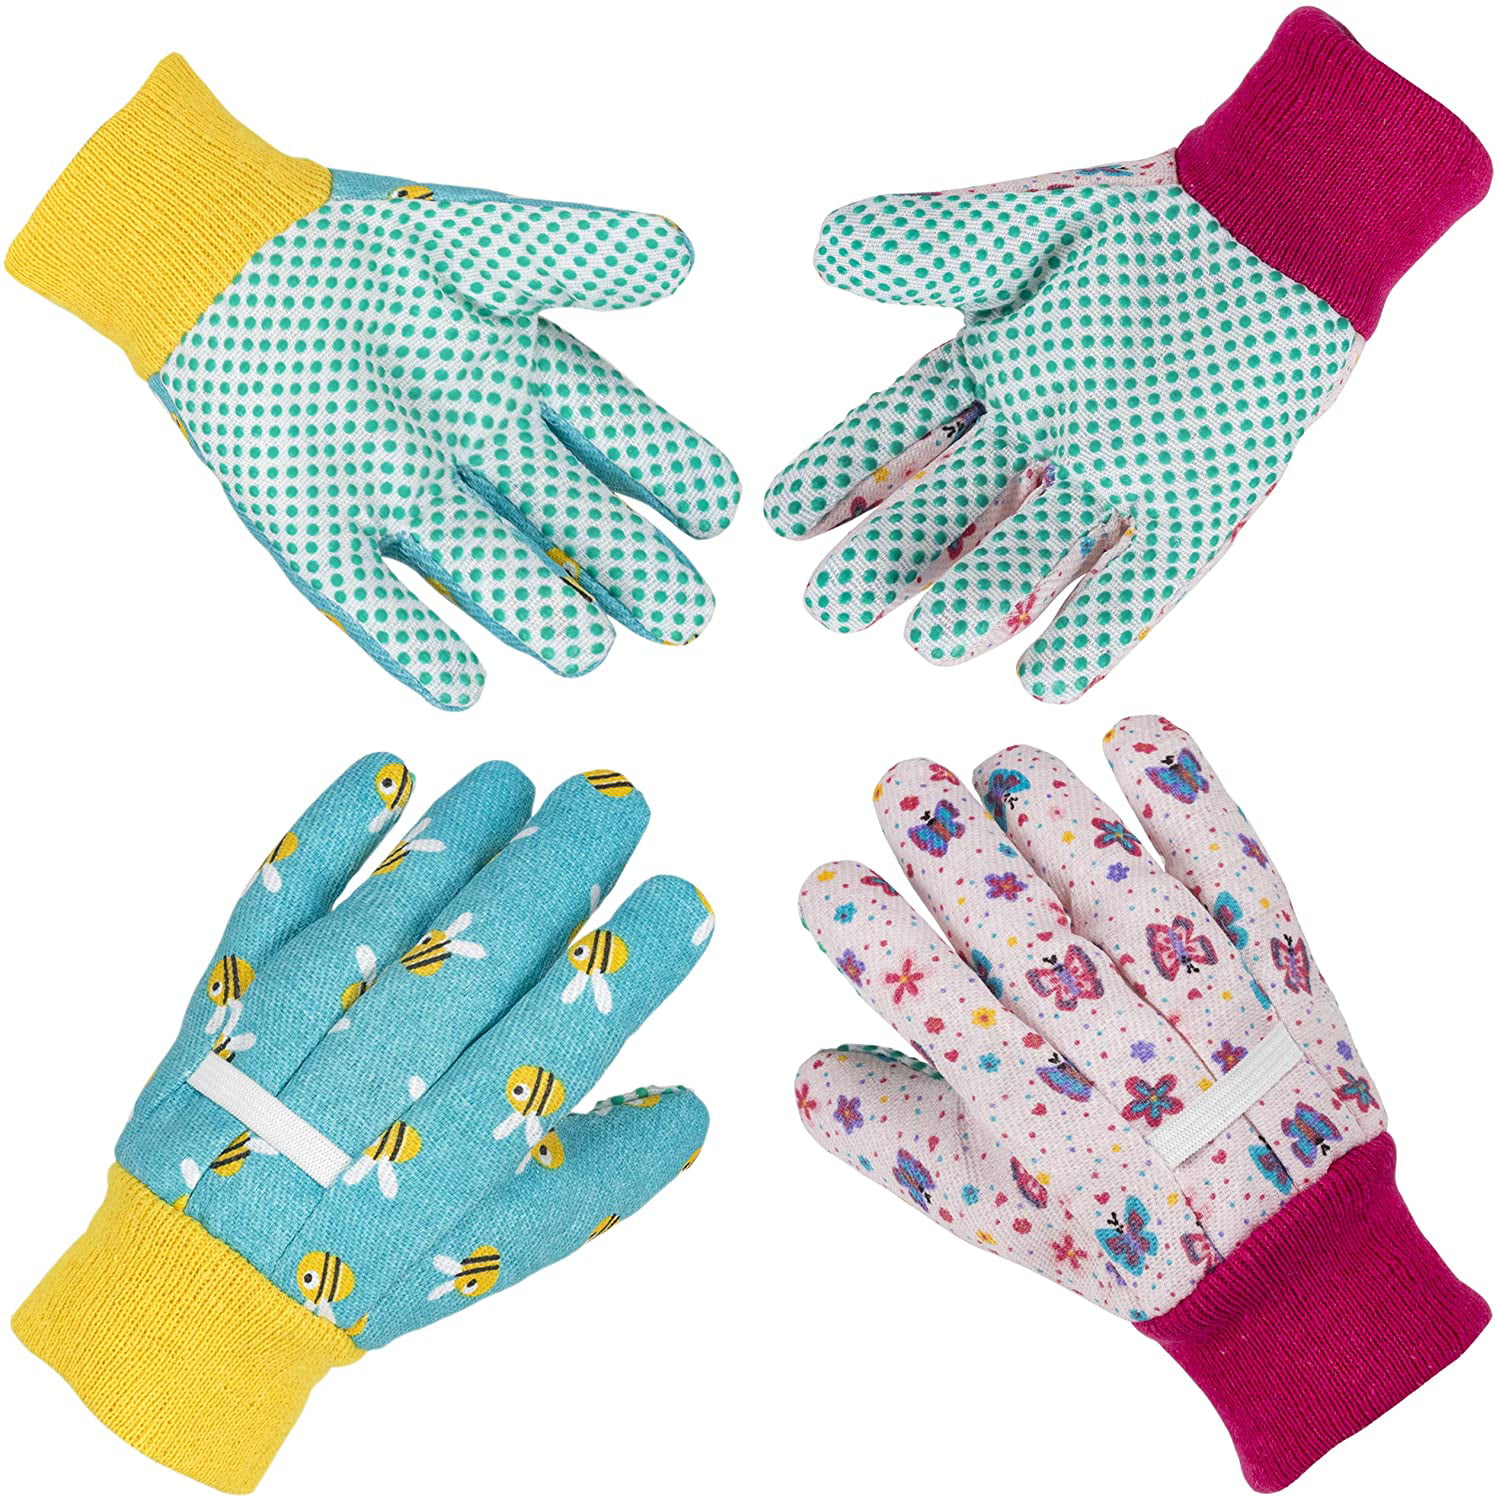 Details about   1Pair/2Pairs Ladies Gardening Gloves Cotton Floral Print Garden Gloves for women 